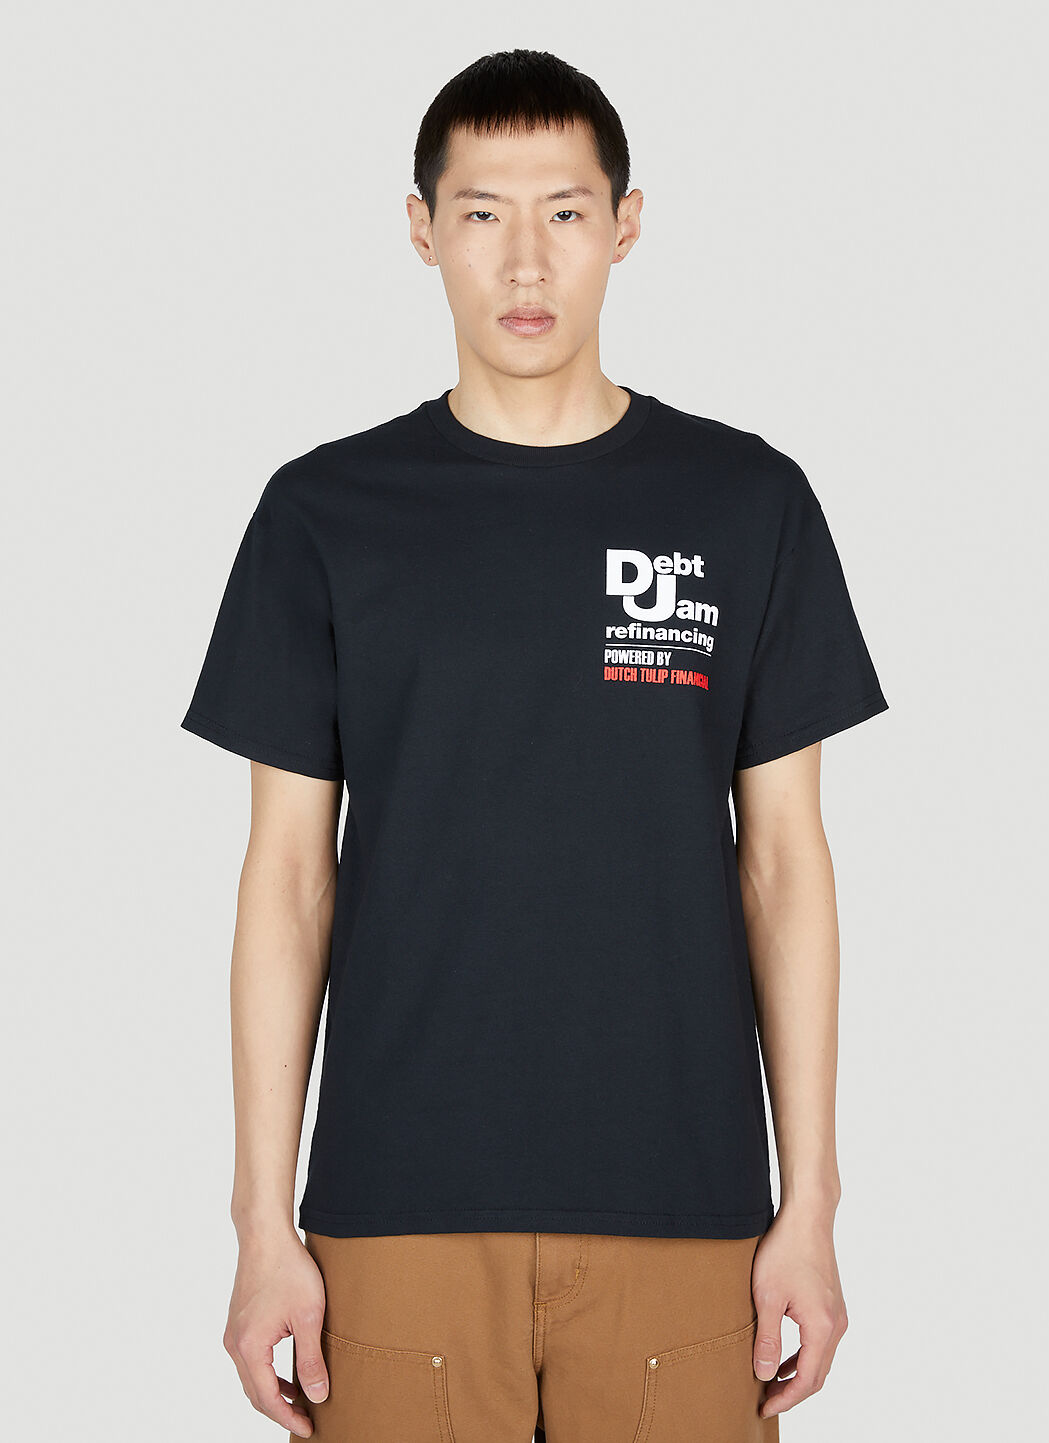 DTF.NYC Debt Jam 短袖 T 恤 黑色 dtf0152004